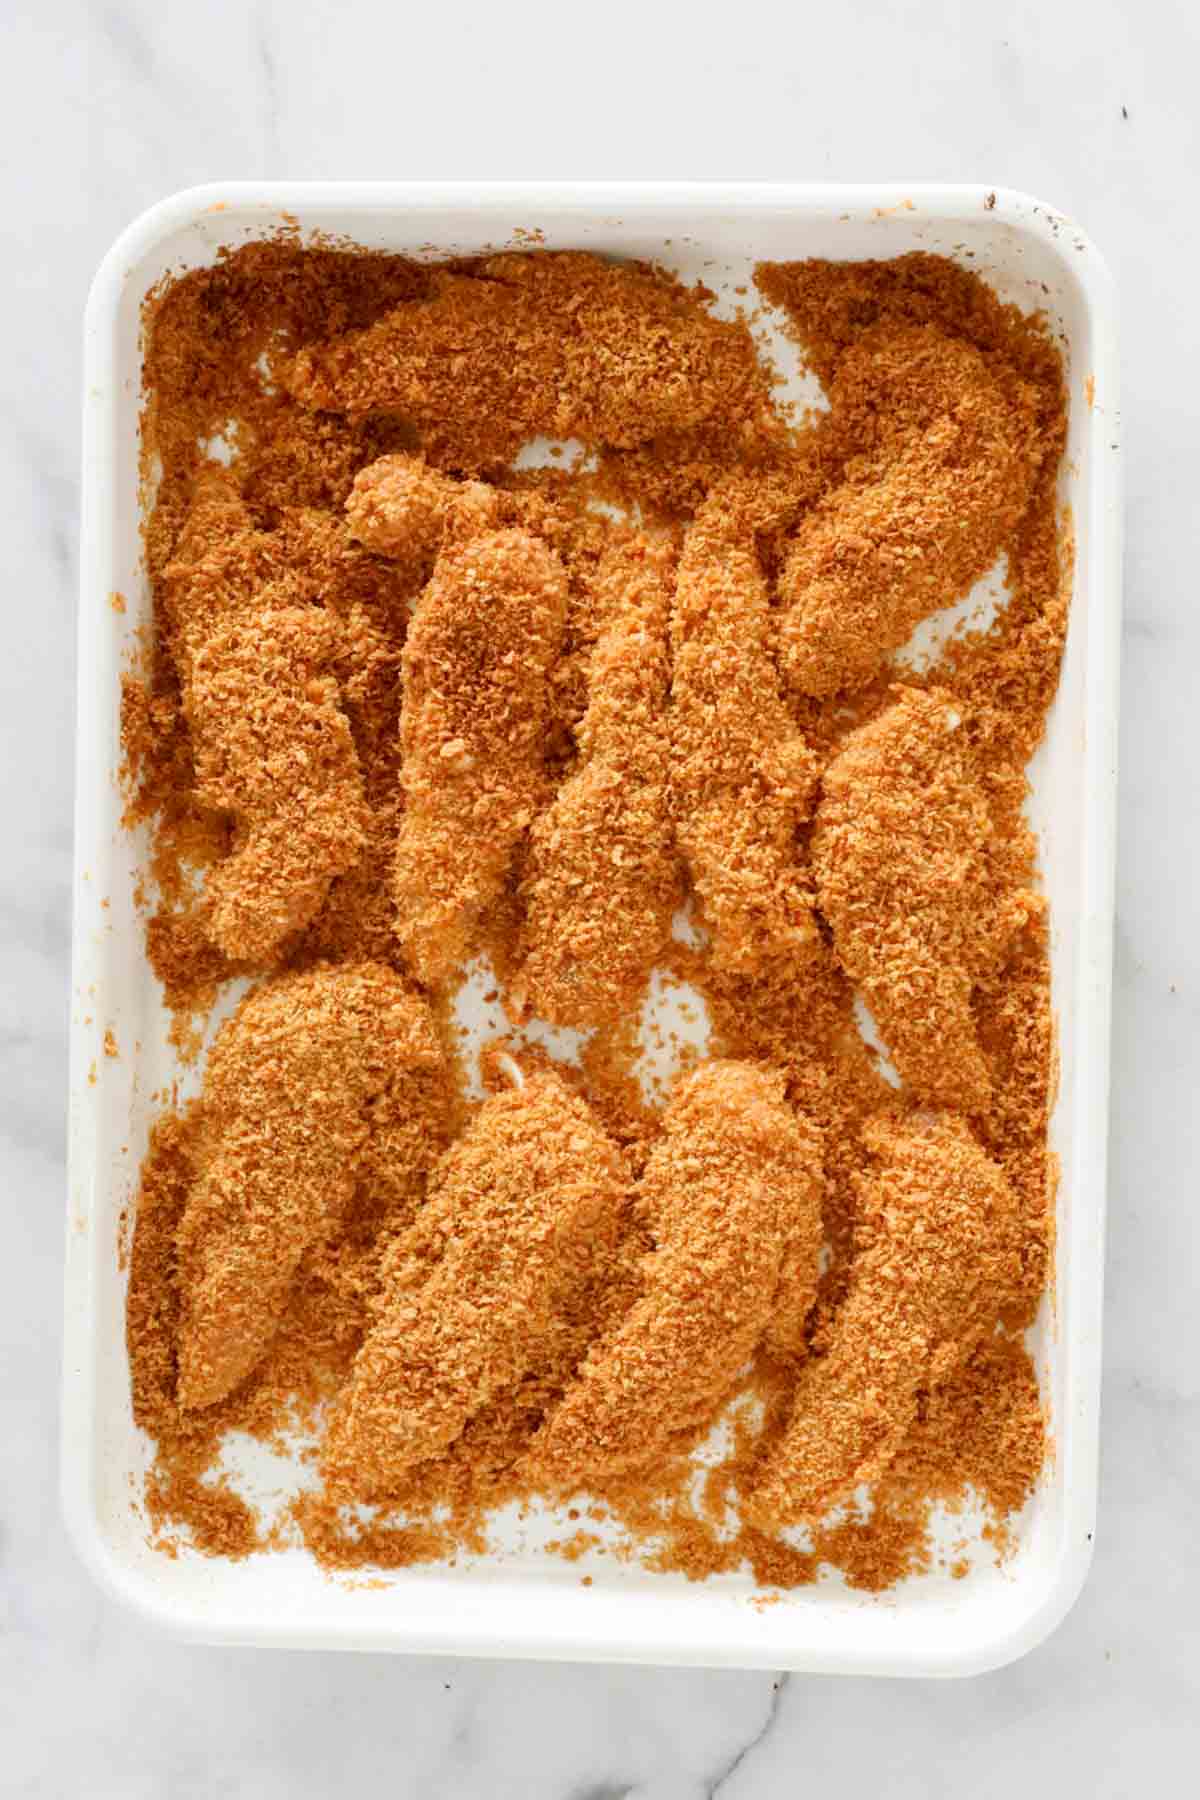 Chicken strips completely coated in crispy panko crumbs.